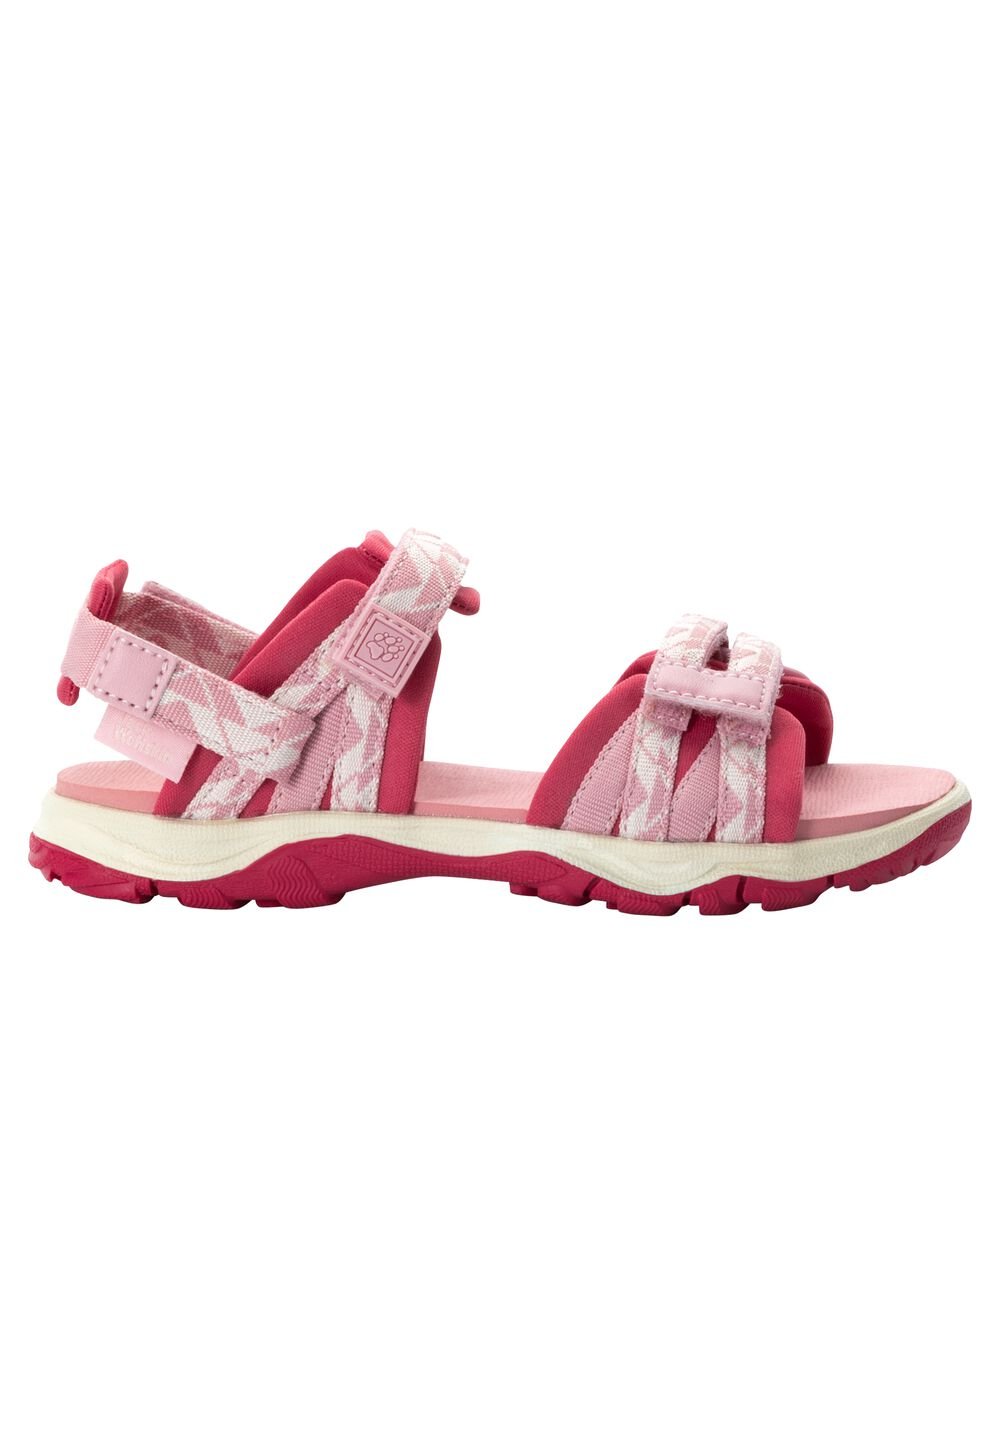 Jack Wolfskin 2 IN 1 Sandal Kids Kinderen sandalen 40 soft pink soft pink